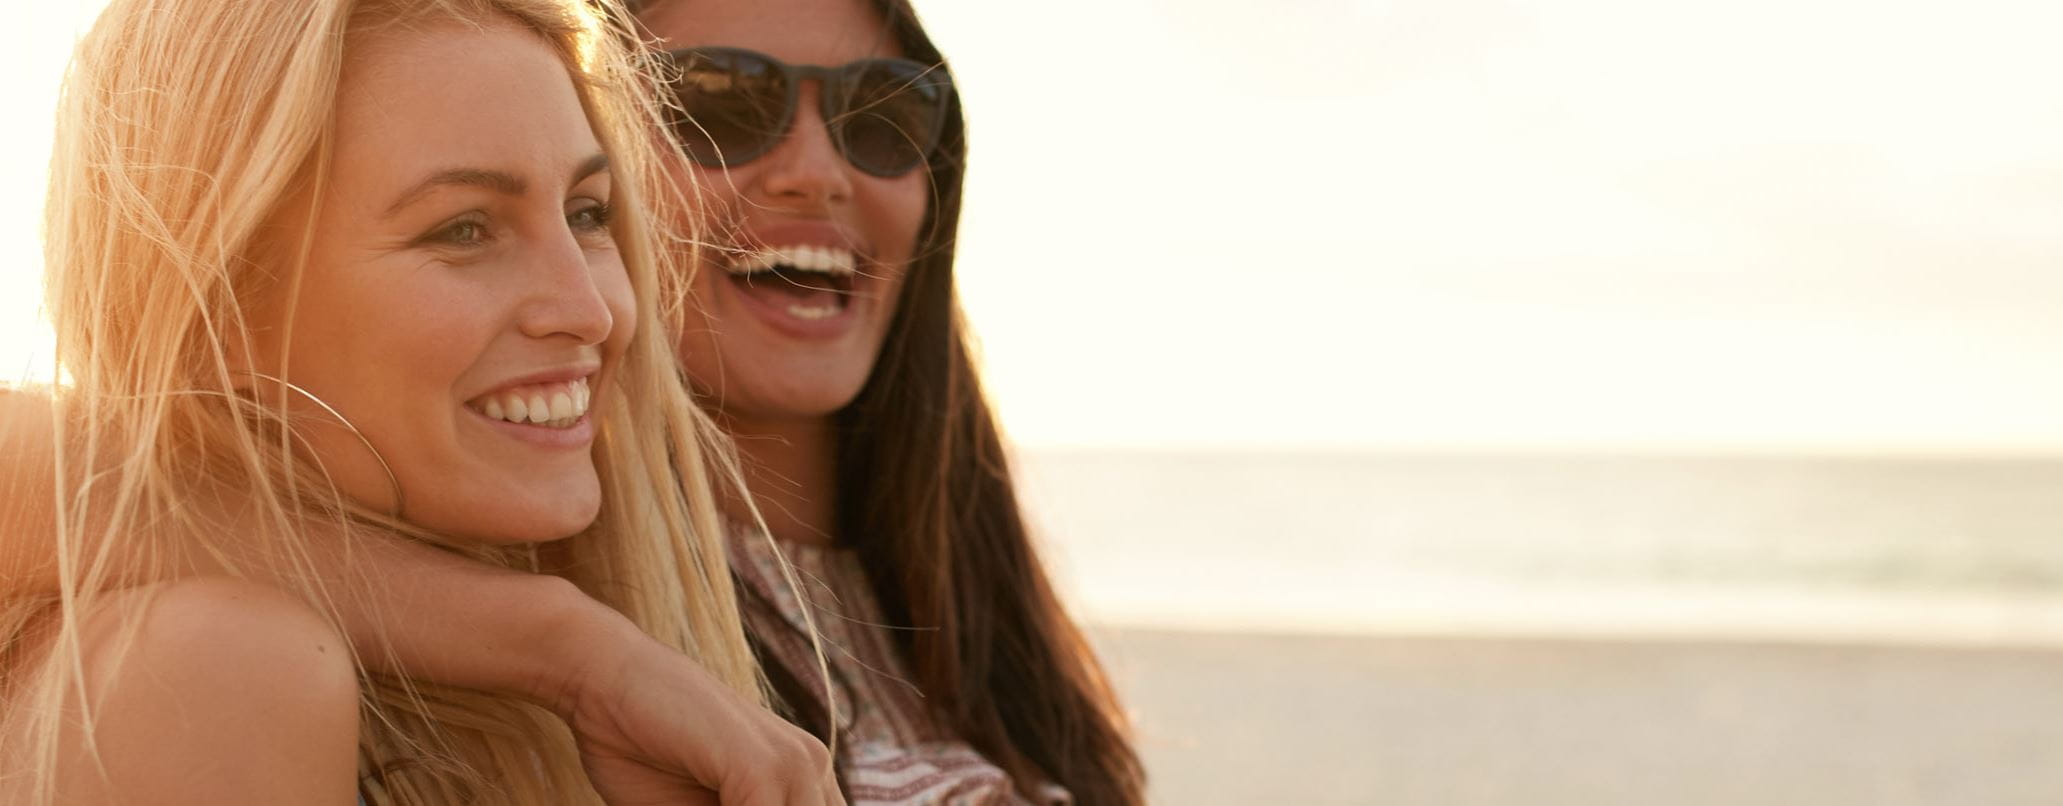 Zwei Frauen lachend am Strand